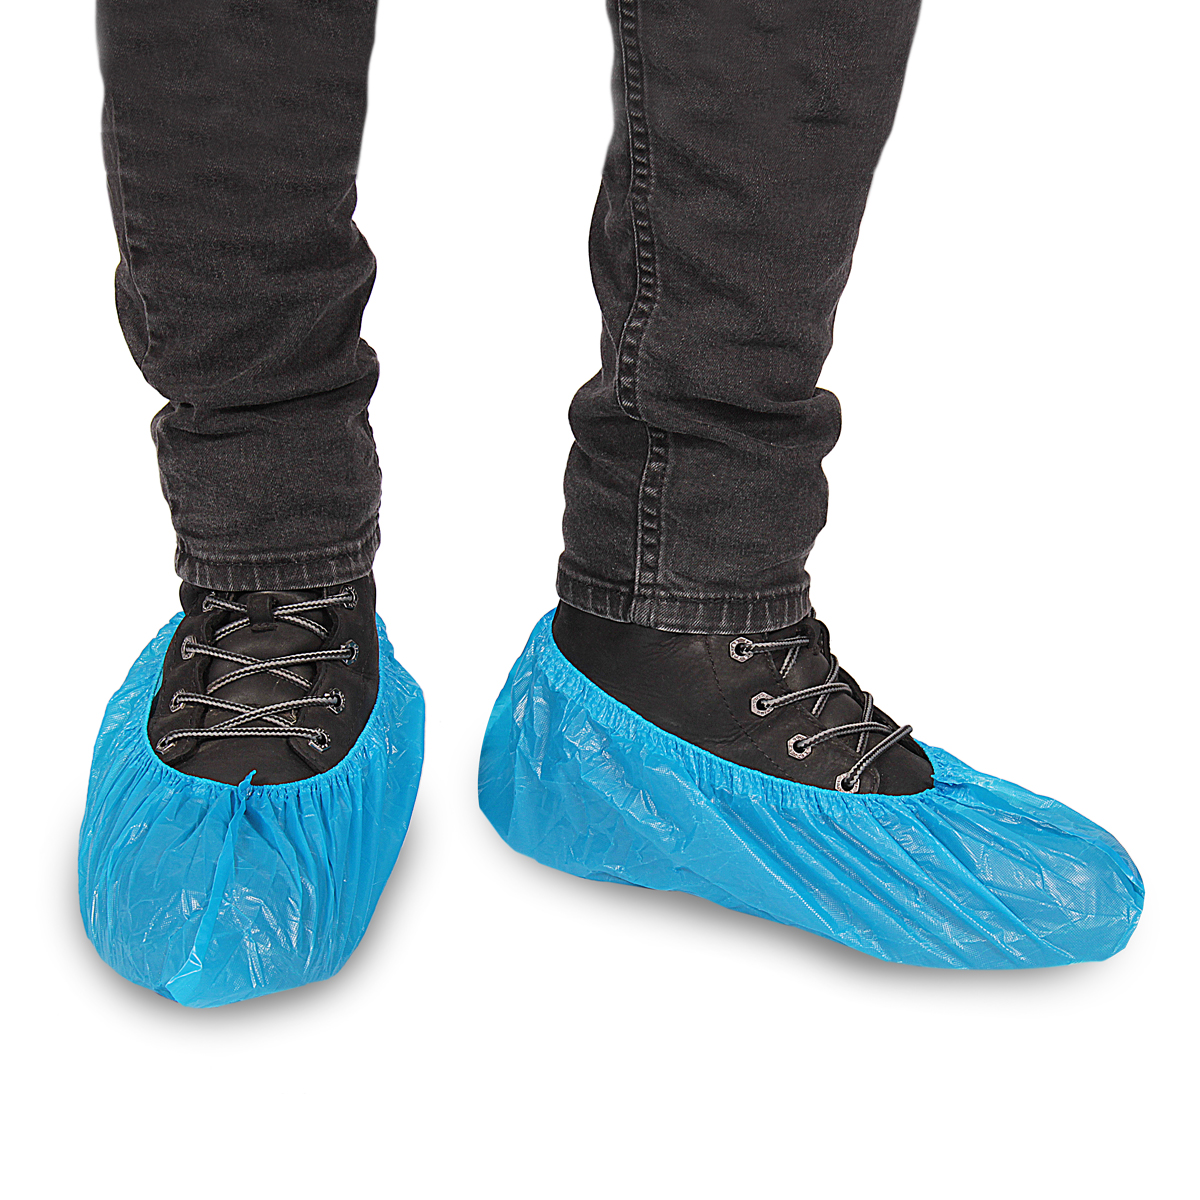 Cubrezapatos impermeable azul - Vestuario Sanitario - TienDental